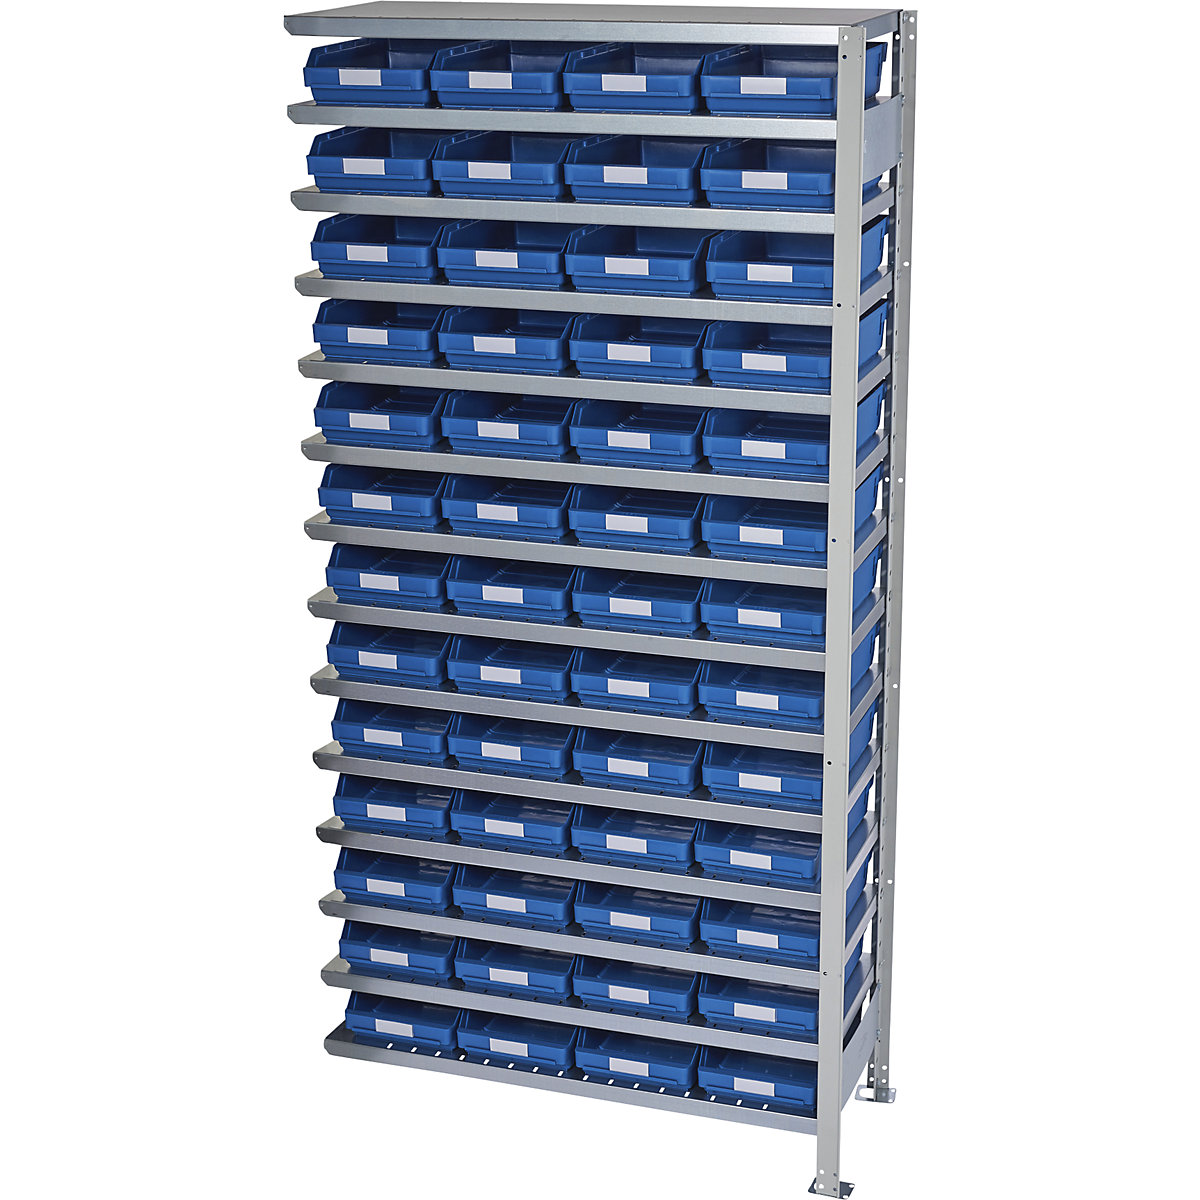 Összedugaszolós állvány dobozokkal – STEMO, állványmagasság 2100 mm, bővítő állvány, 300 mm mély, 52 kék doboz-13